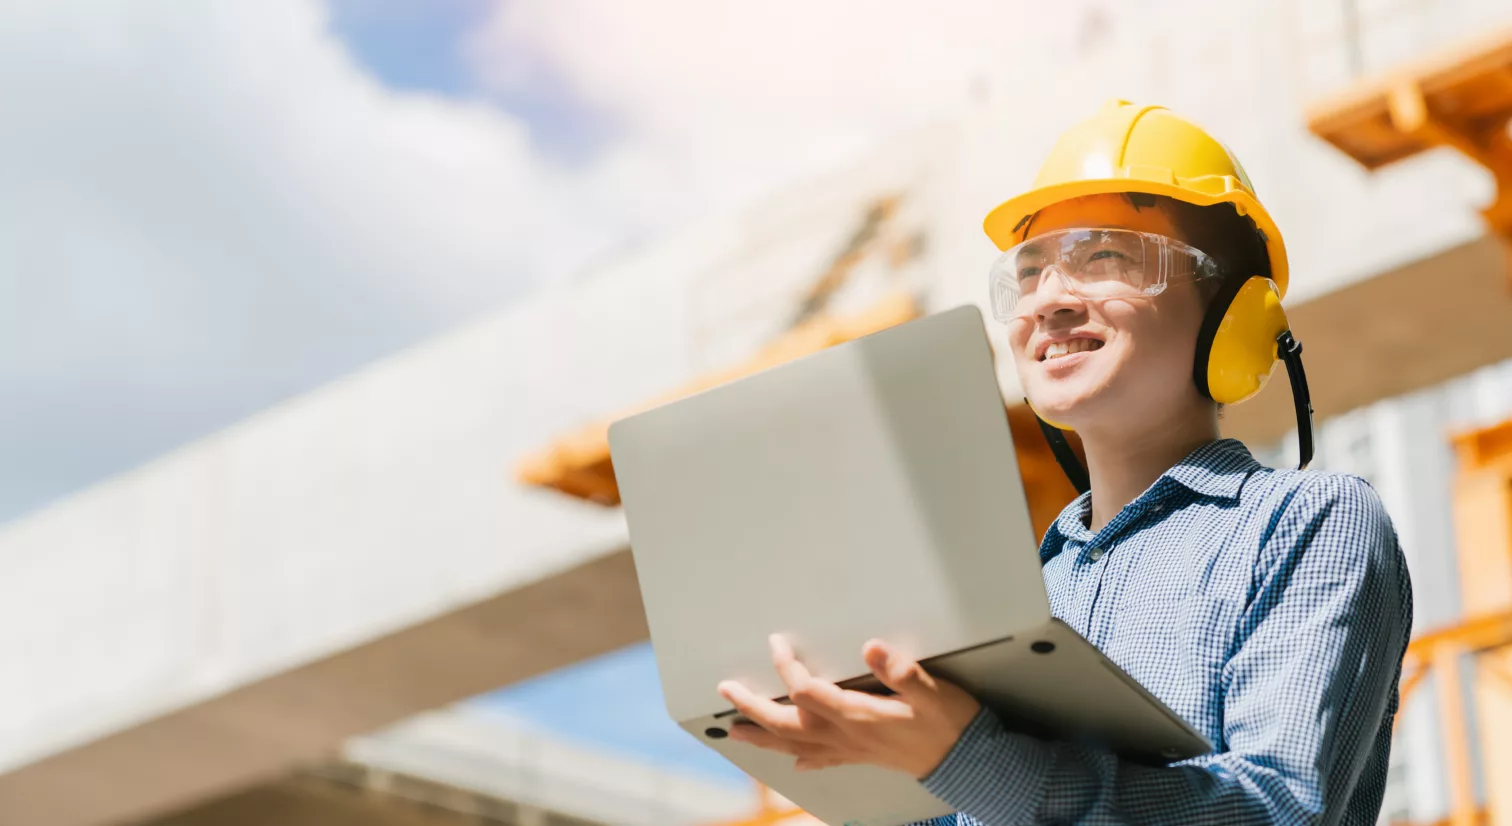 Person med gul hjelm, vernebriller og gule hørselsvern holder en PC i hendene og ser opp med et smil om munnen. I bakgrunnen er det en byggeplass med betongblokker under konstruksjon.